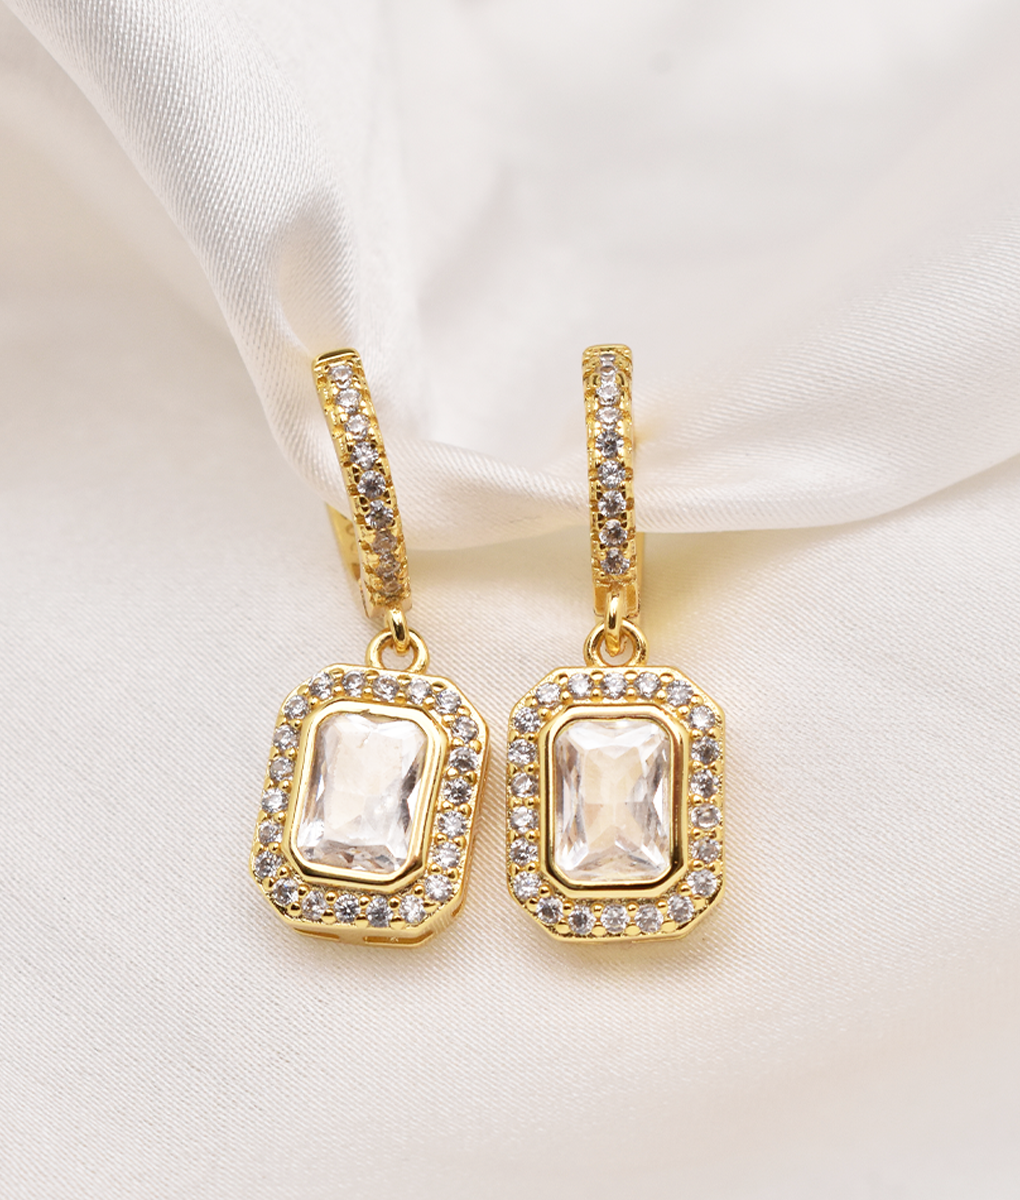 Clear crystal drop earrings 